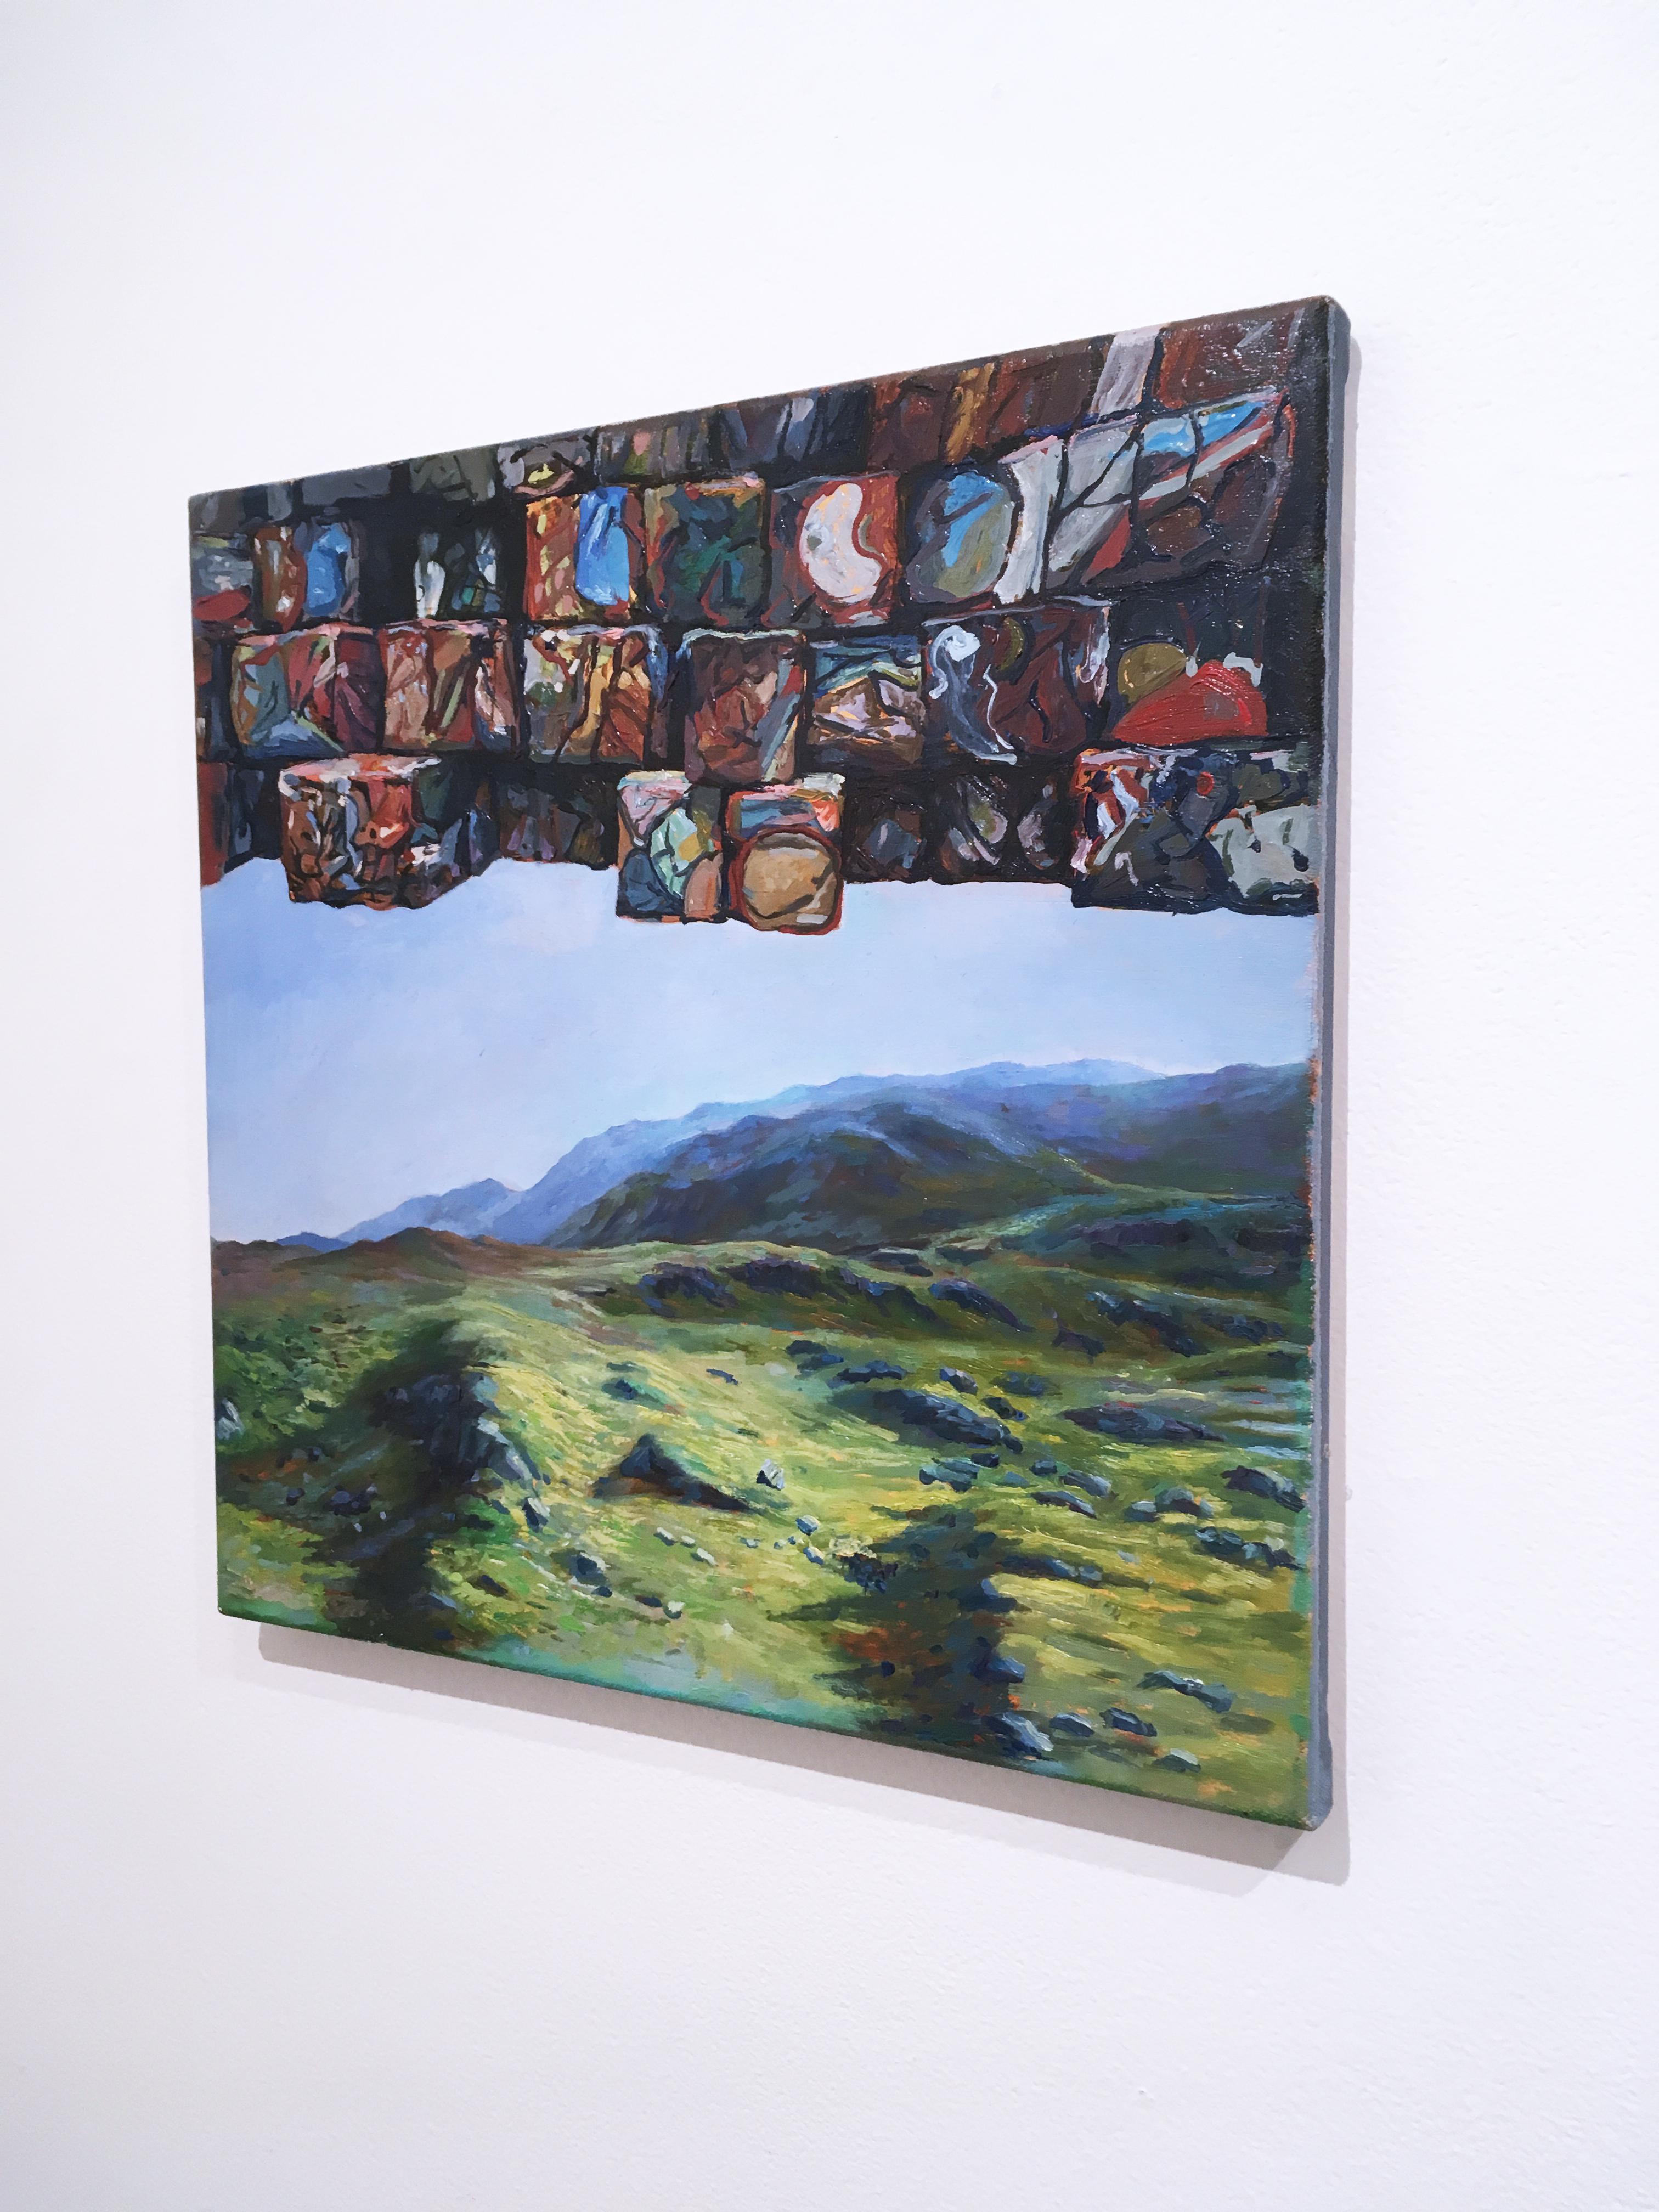 Crushed Oil Cans, Surrealistisch, figurativ, Landschaft, Öl auf Leinen, 2015 (Grau), Landscape Painting, von Thomas John Carlson